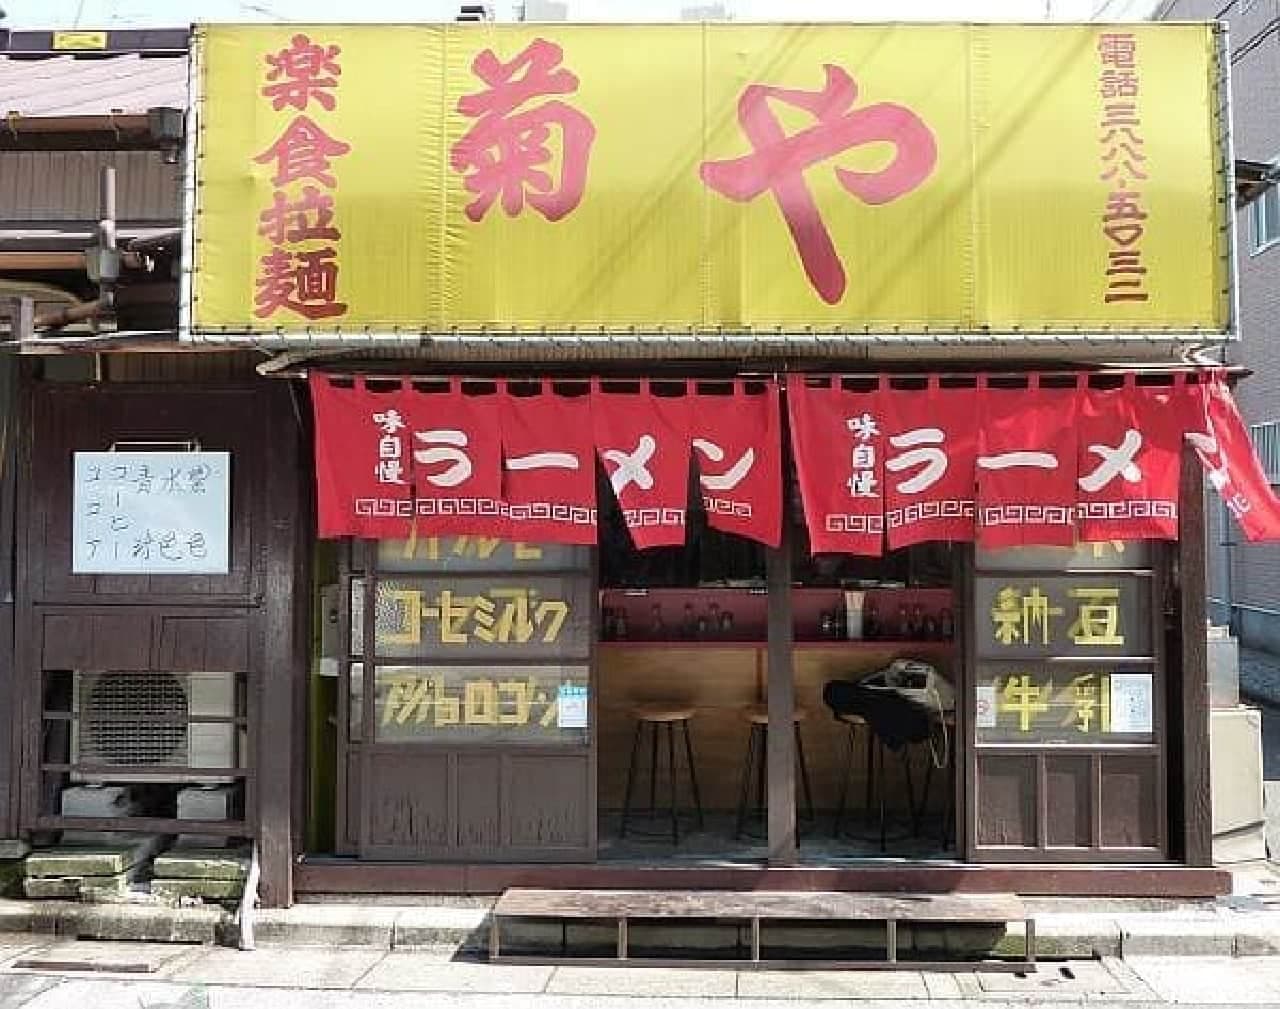 This is Kitasenju's ramen shop "Kikuya"